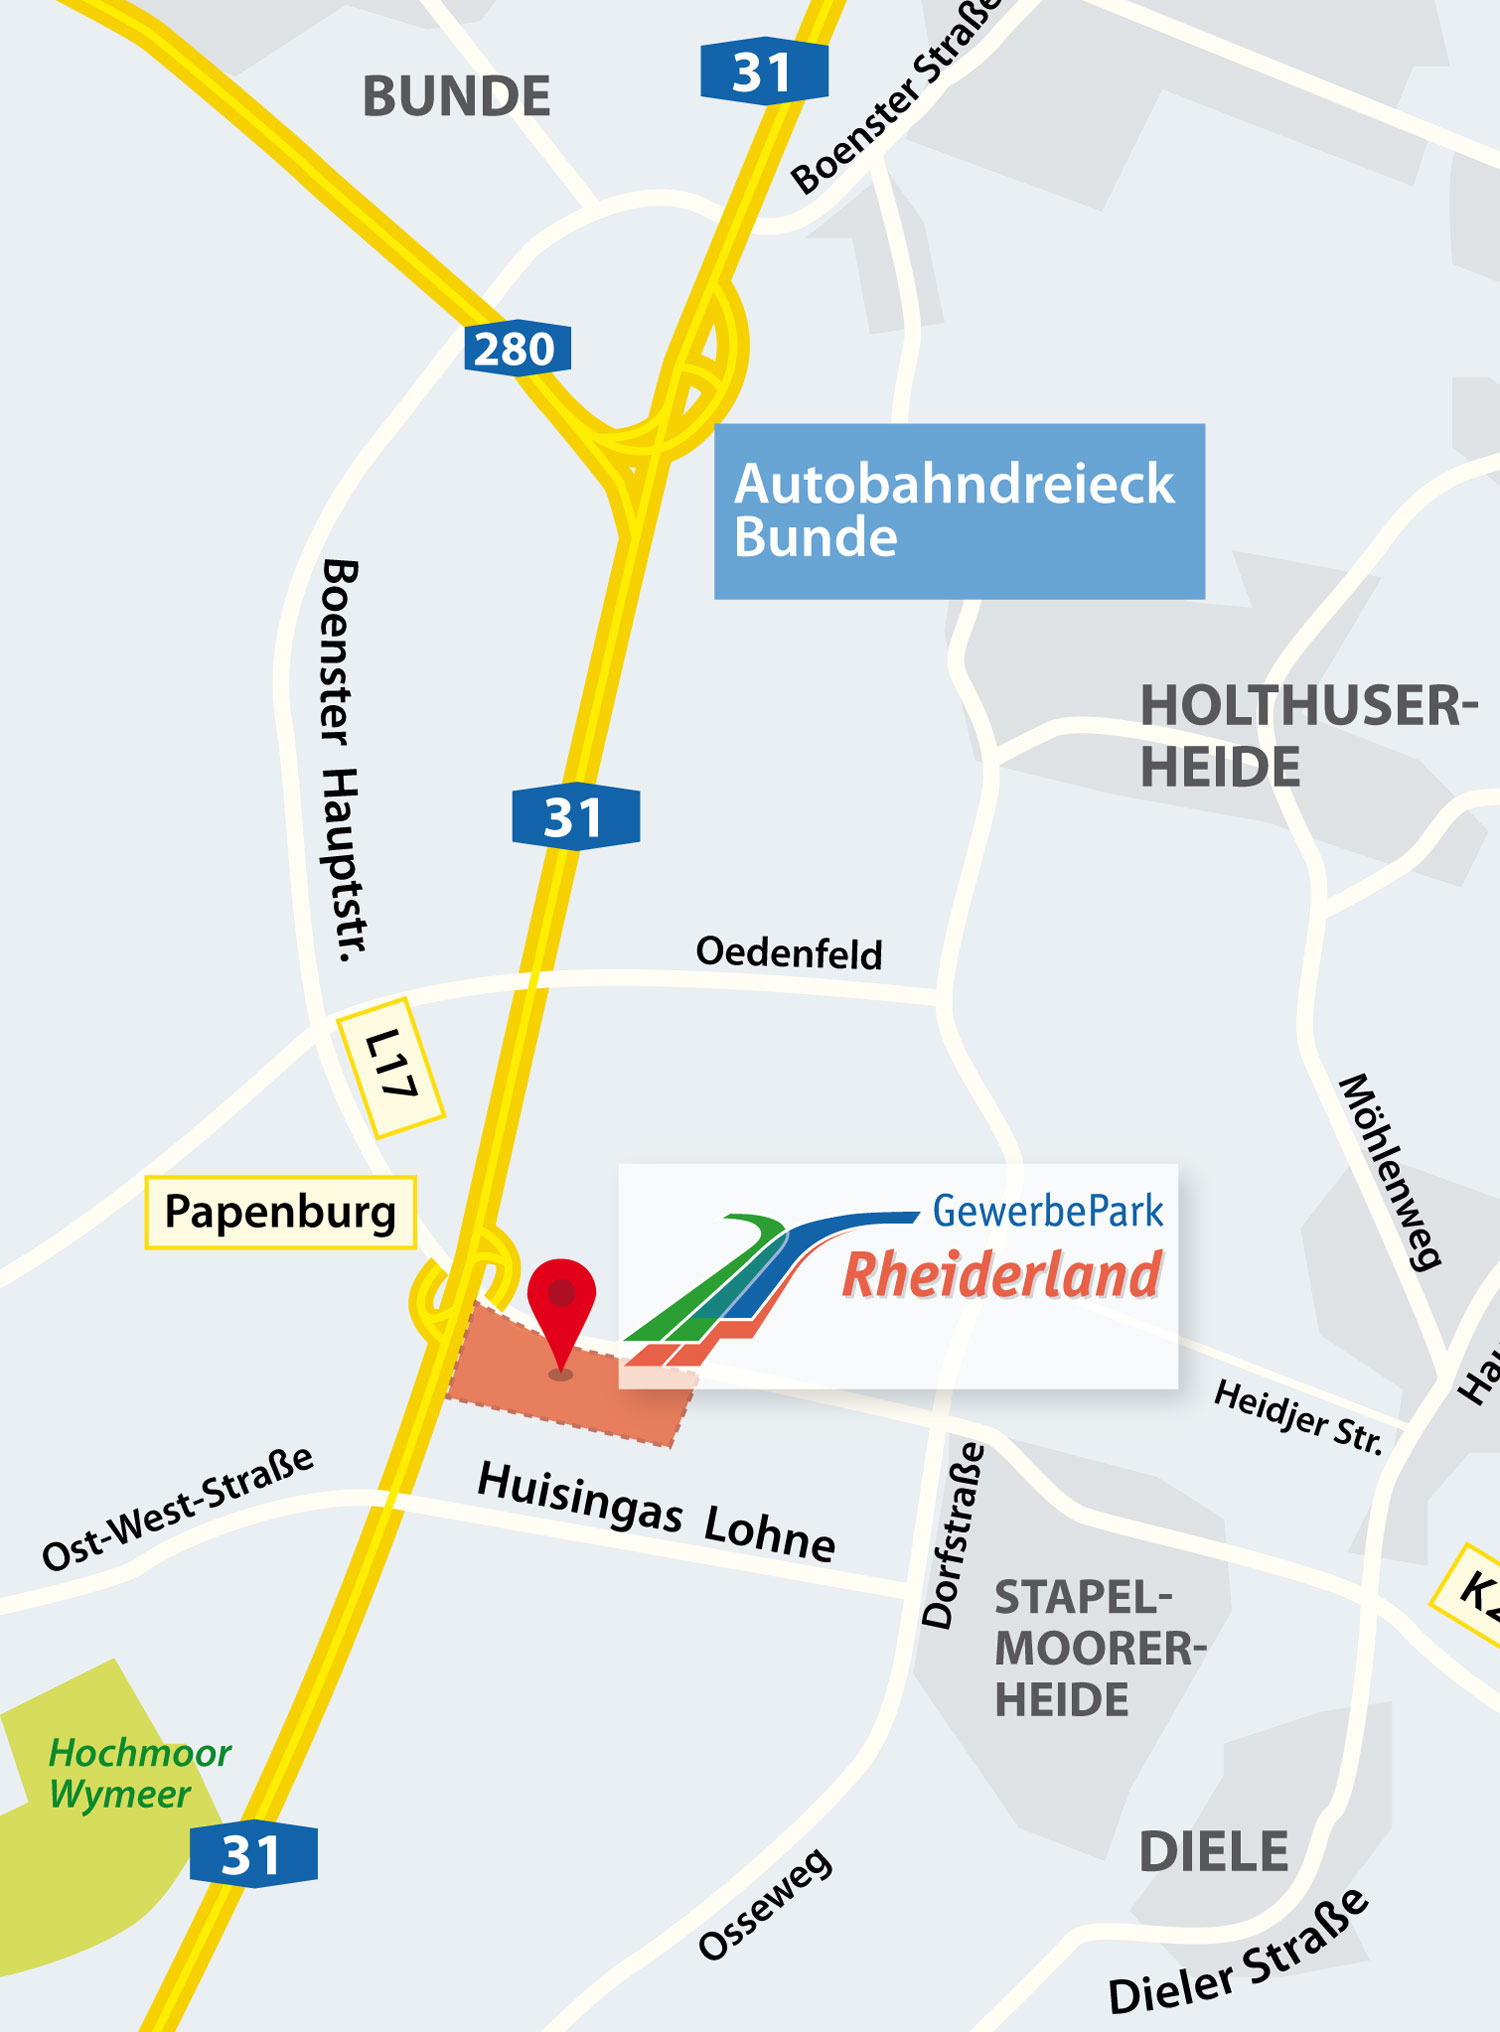 GewerbePark Rheiderland Map